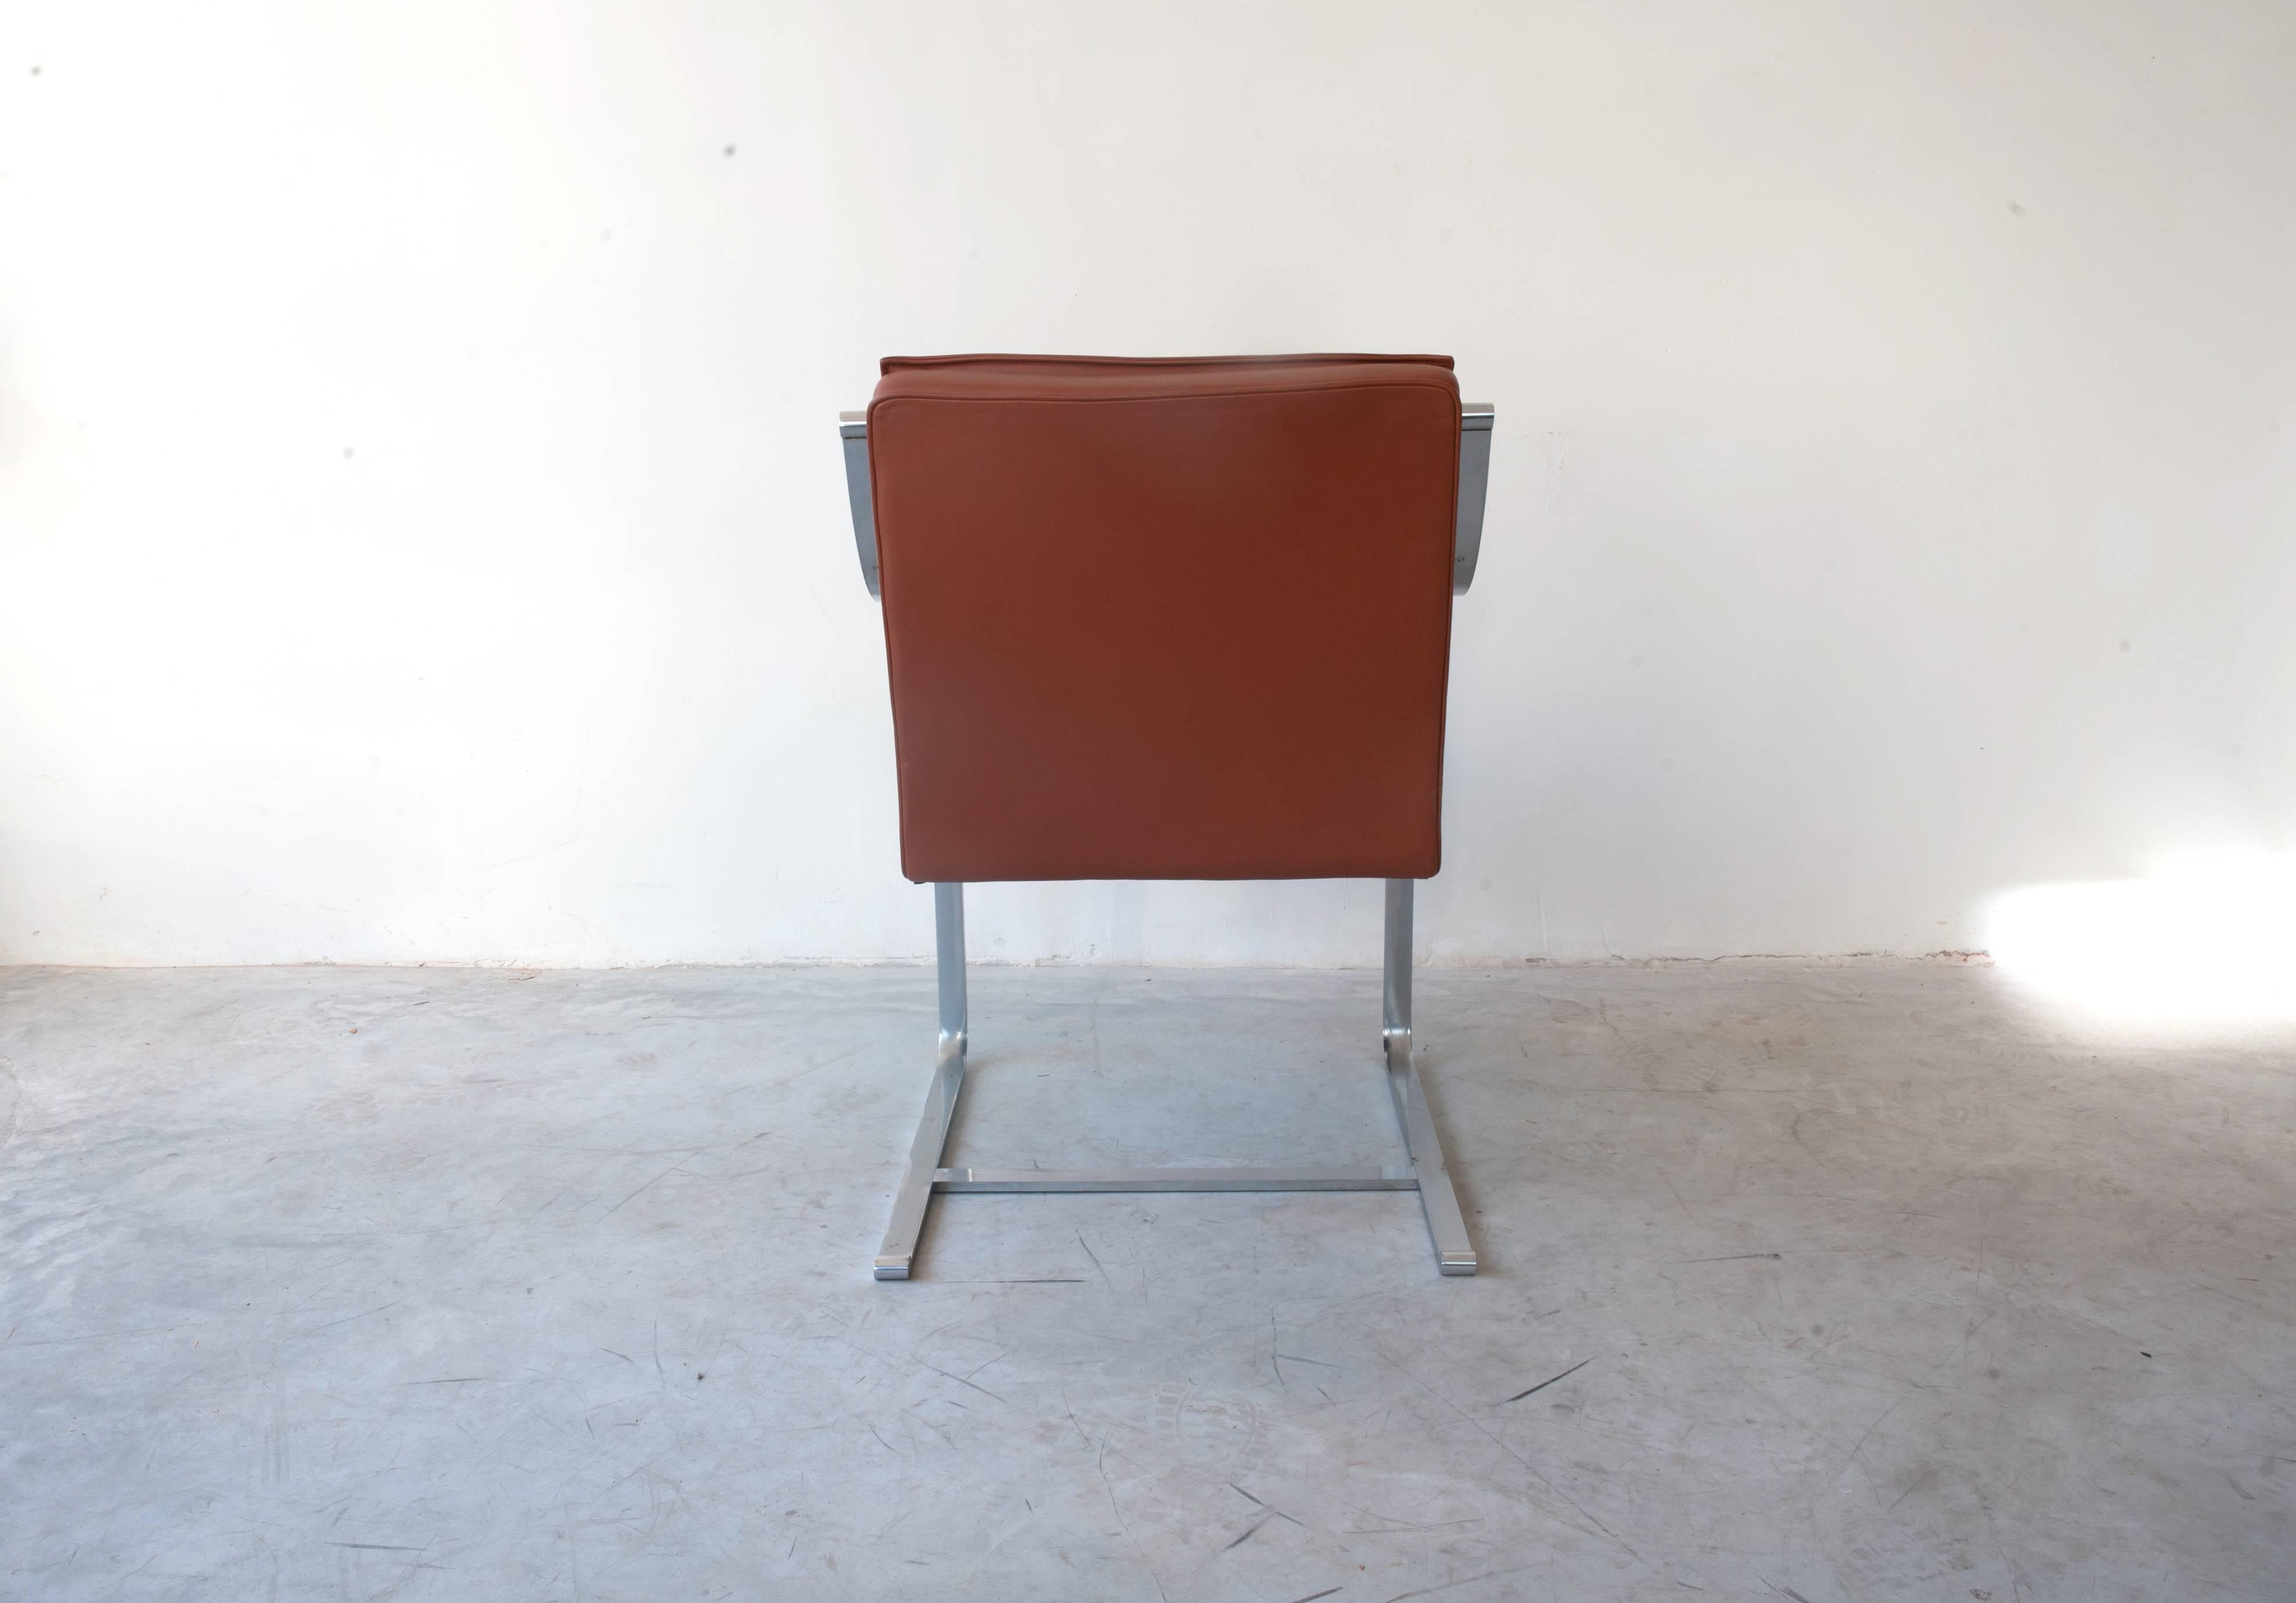 Magnifique fauteuil en cuir marron conçu par Rudolf Bernd Glatzel pour Walter Knoll, de la série Art collection.
Structure en acier inoxydable lourd, cadre brossé et revêtement original en cuir marron souple de haute qualité. Chaise très